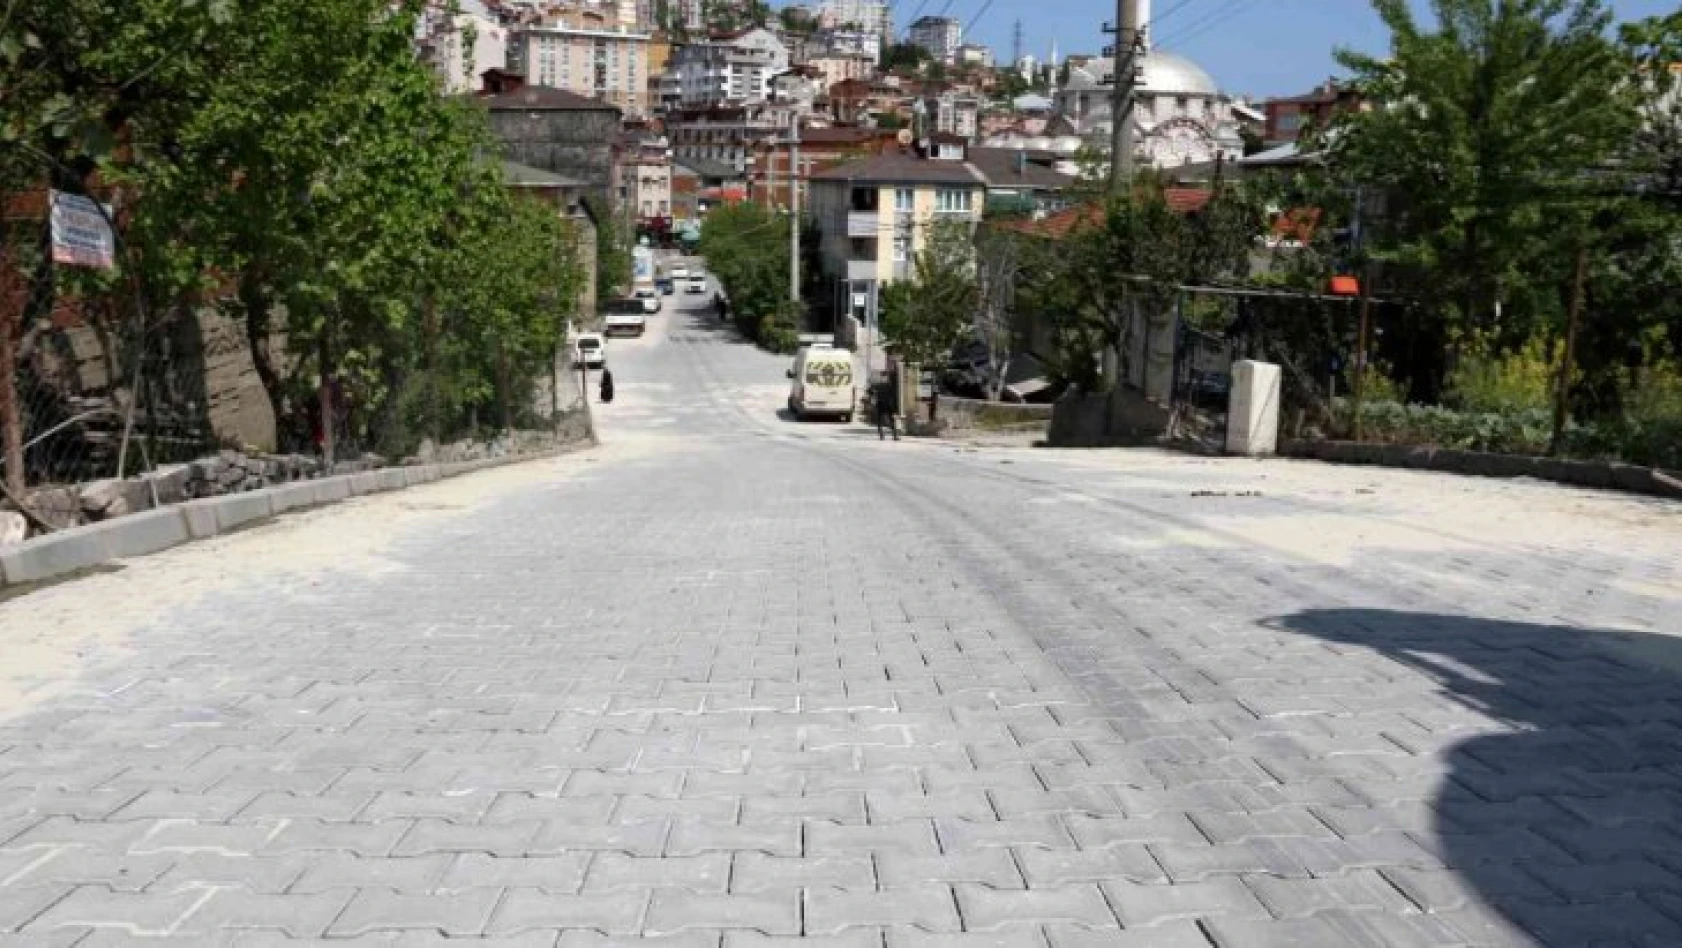 Gebze Topal Osman Ağa Caddesi, kilitli parke taşı ile yenilendi